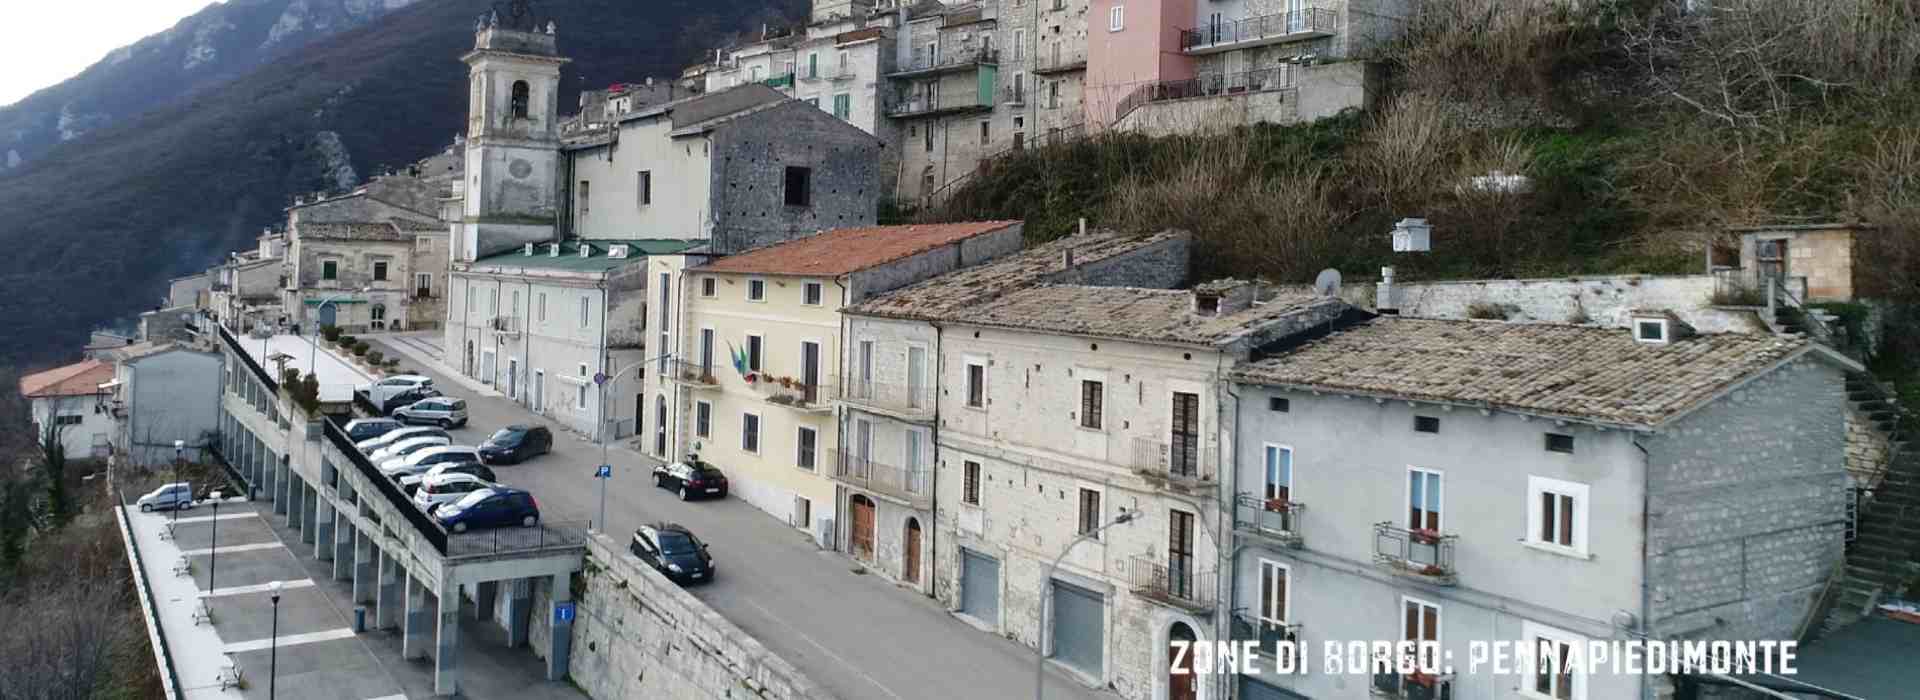 Zone di Borgo: il nostro viaggio a Pennapiedimonte